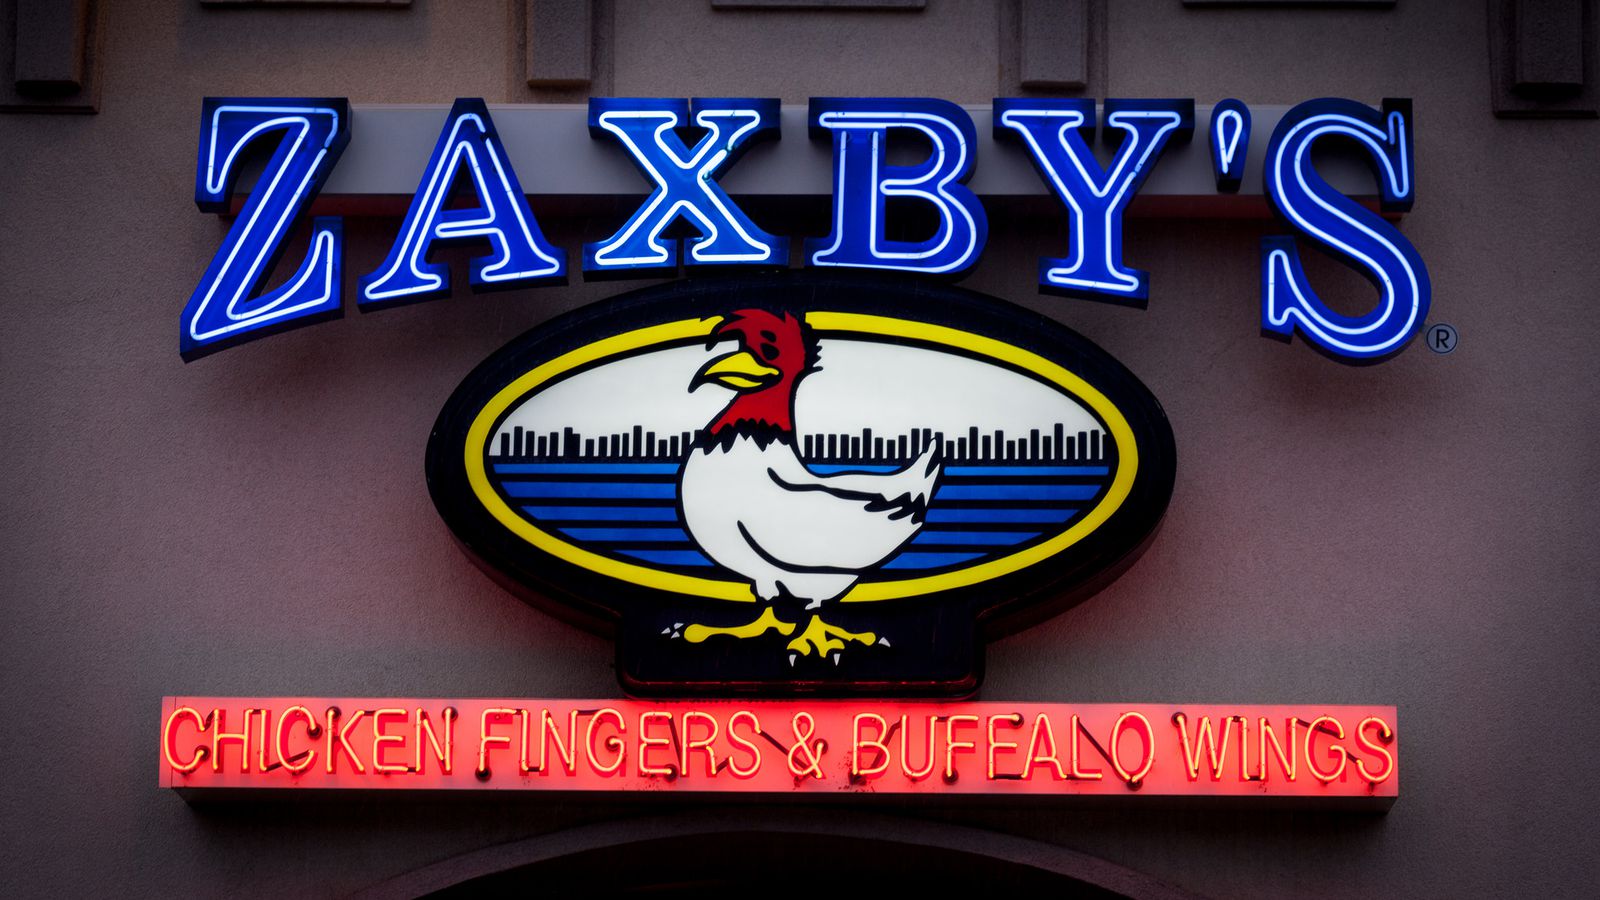 Zaxby's chicken fingers and buffalo wings written